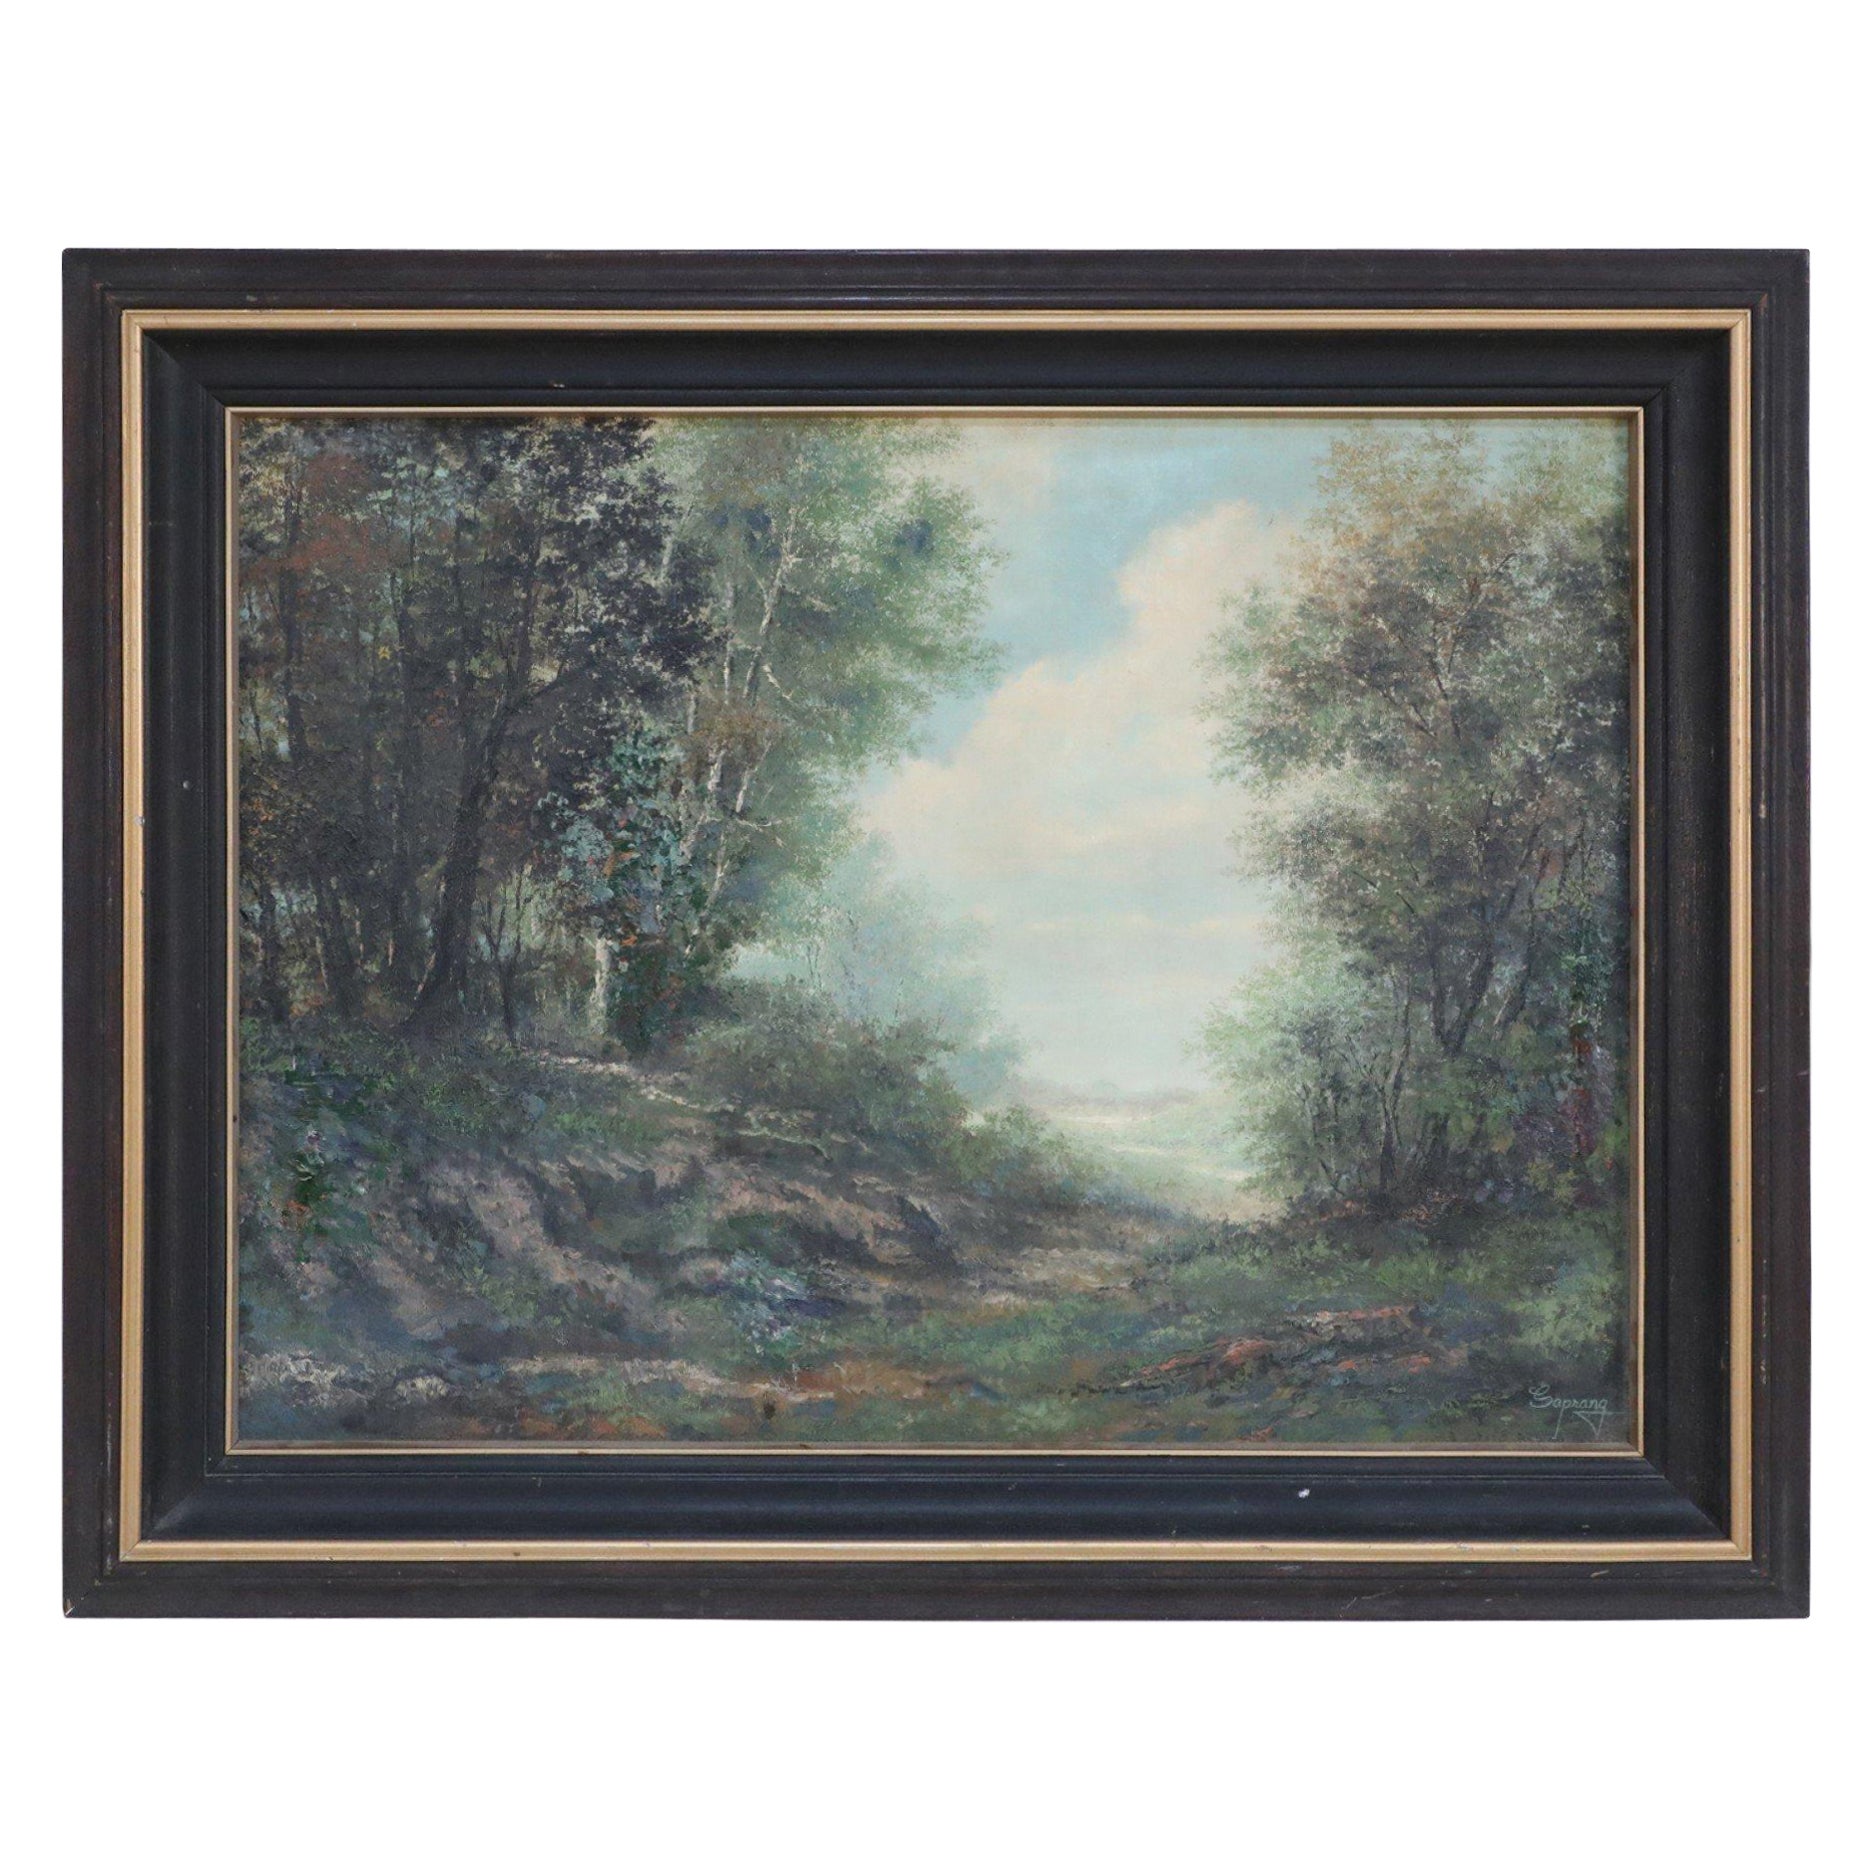 Peinture à l'huile d'un paysage encadrée représentant un chemin de forêt et des montagnes lointaines